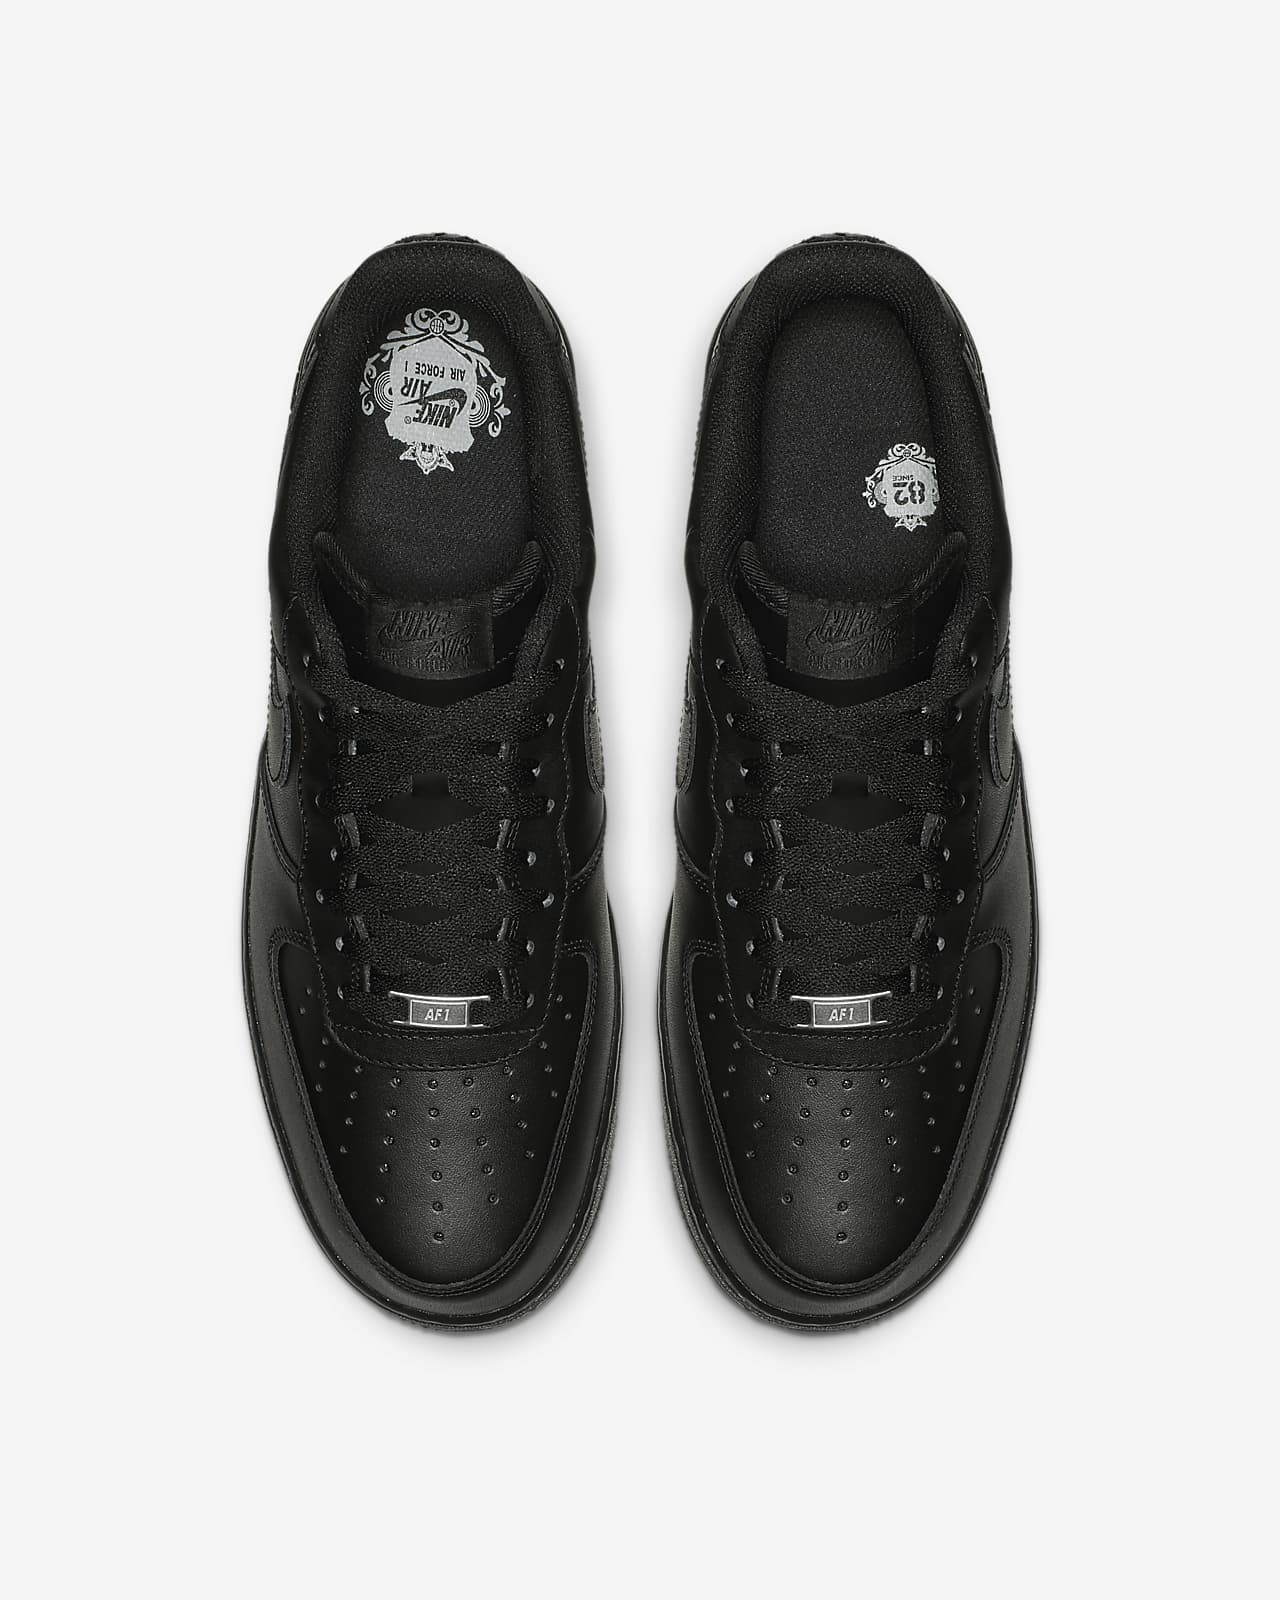 black forces shoes